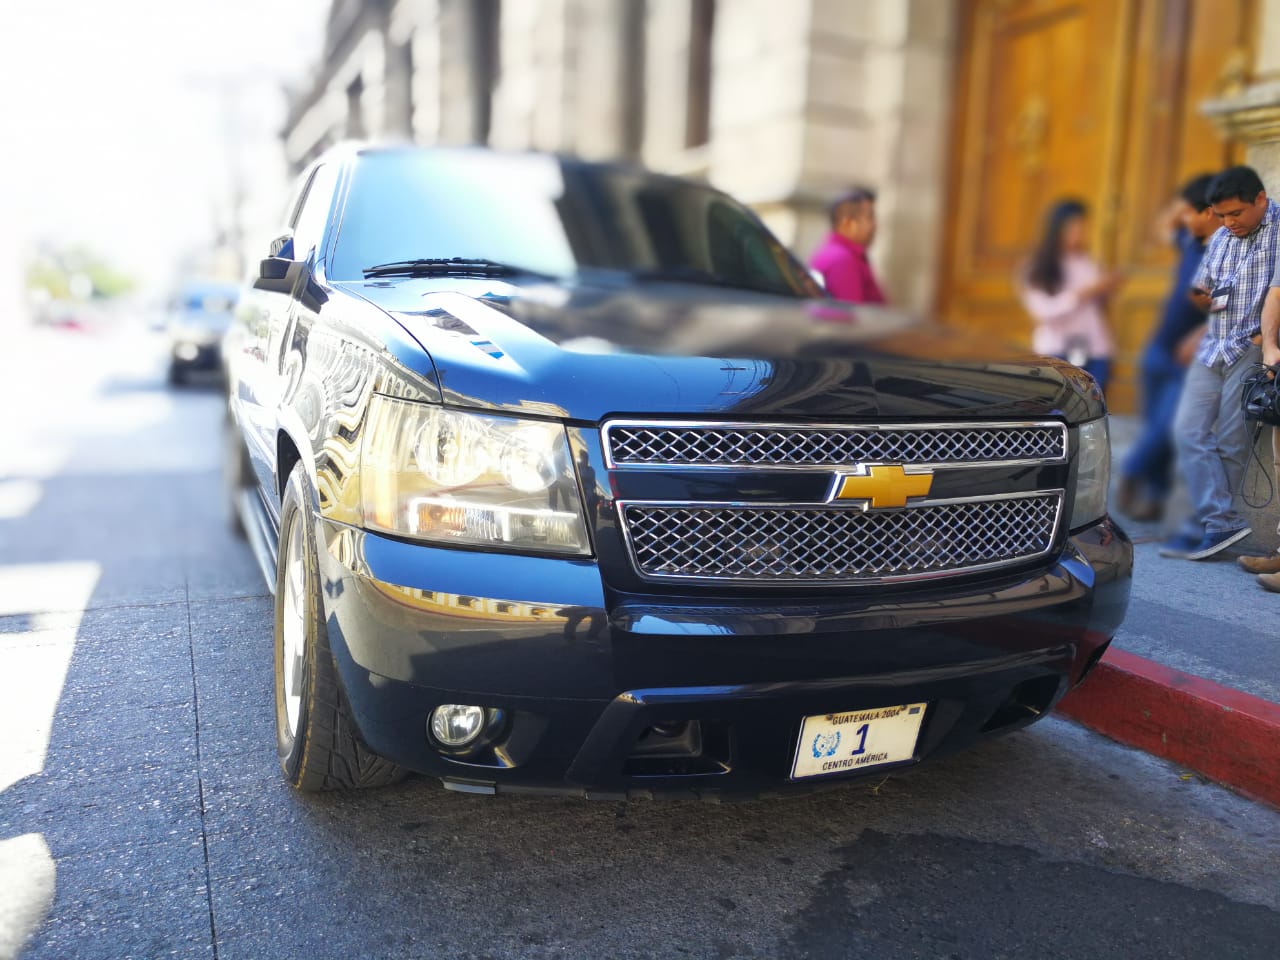 Los vehículos de la caravana presidencial se estuvieron estacionados en la 9a. avenida frente al Palacio Legislativo mientras la reunión de los mandatarios se realizaba. (Foto Prensa Libre: Carlos Hernández Ovalle)